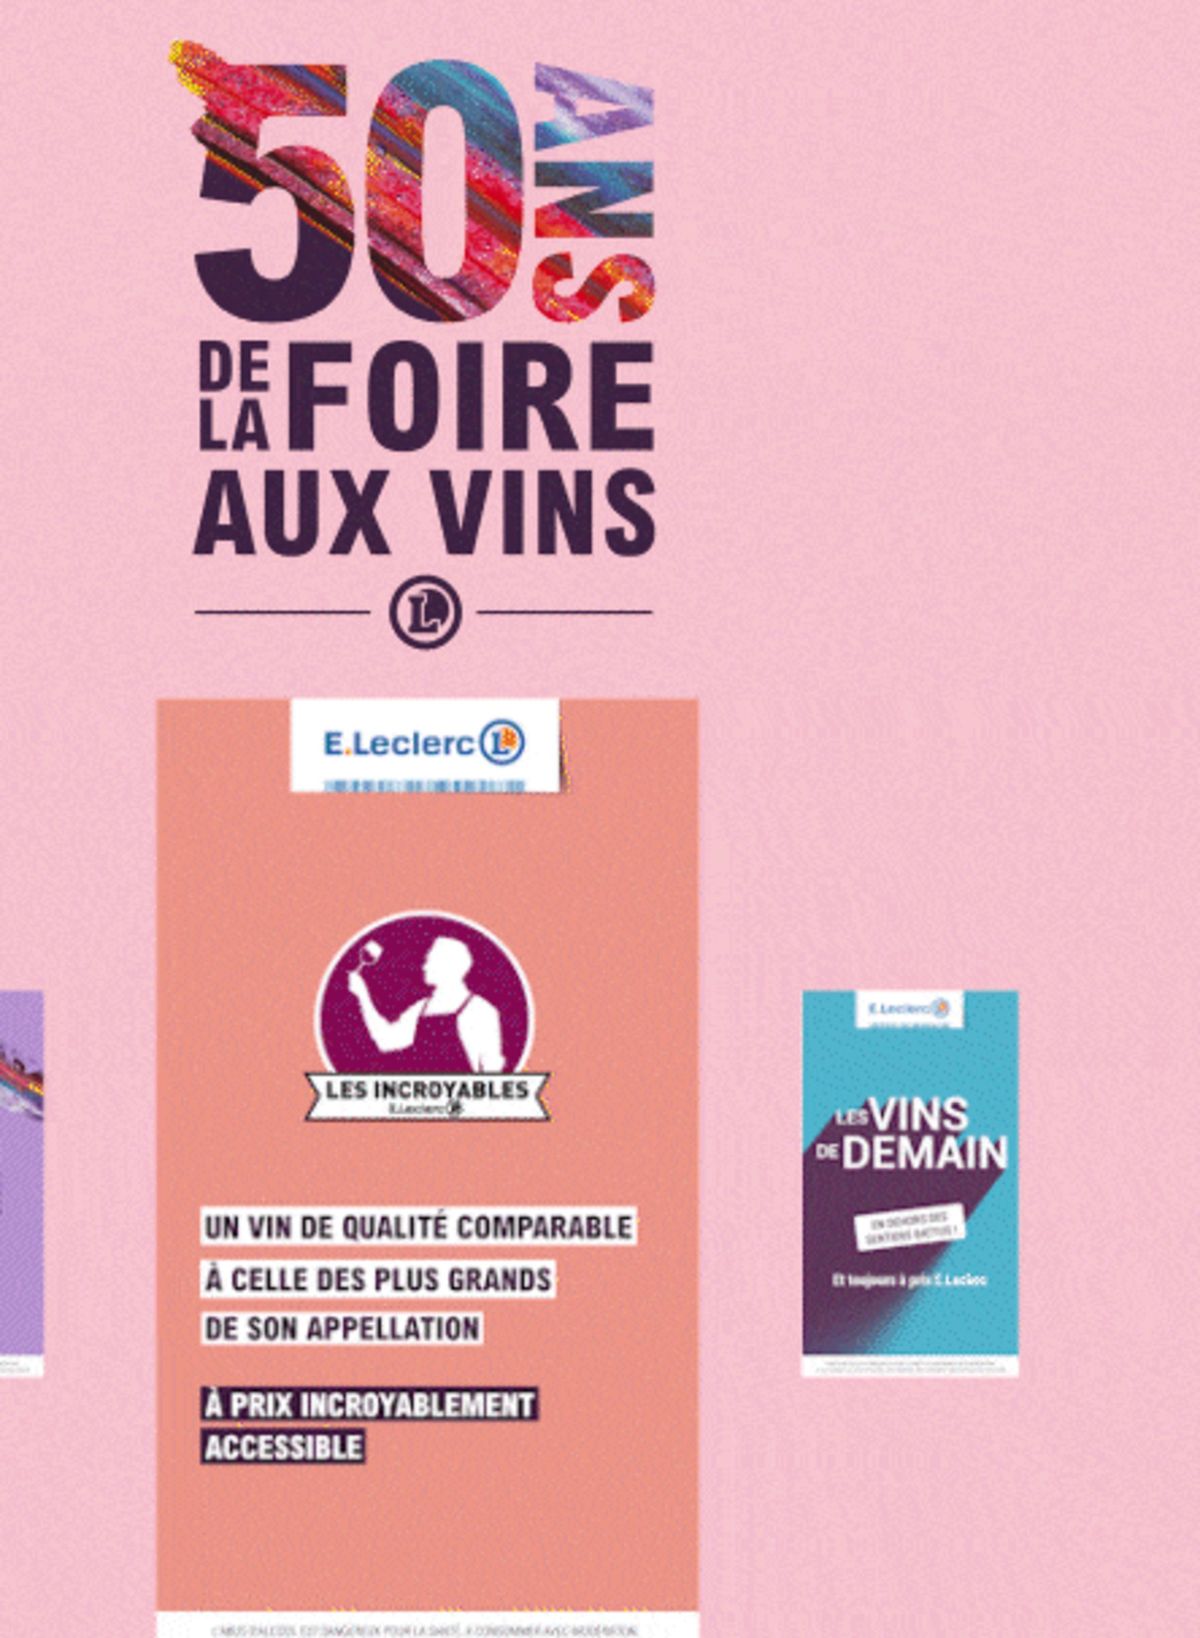 Catalogue Foire Aux Vins - Mixte, page 00665